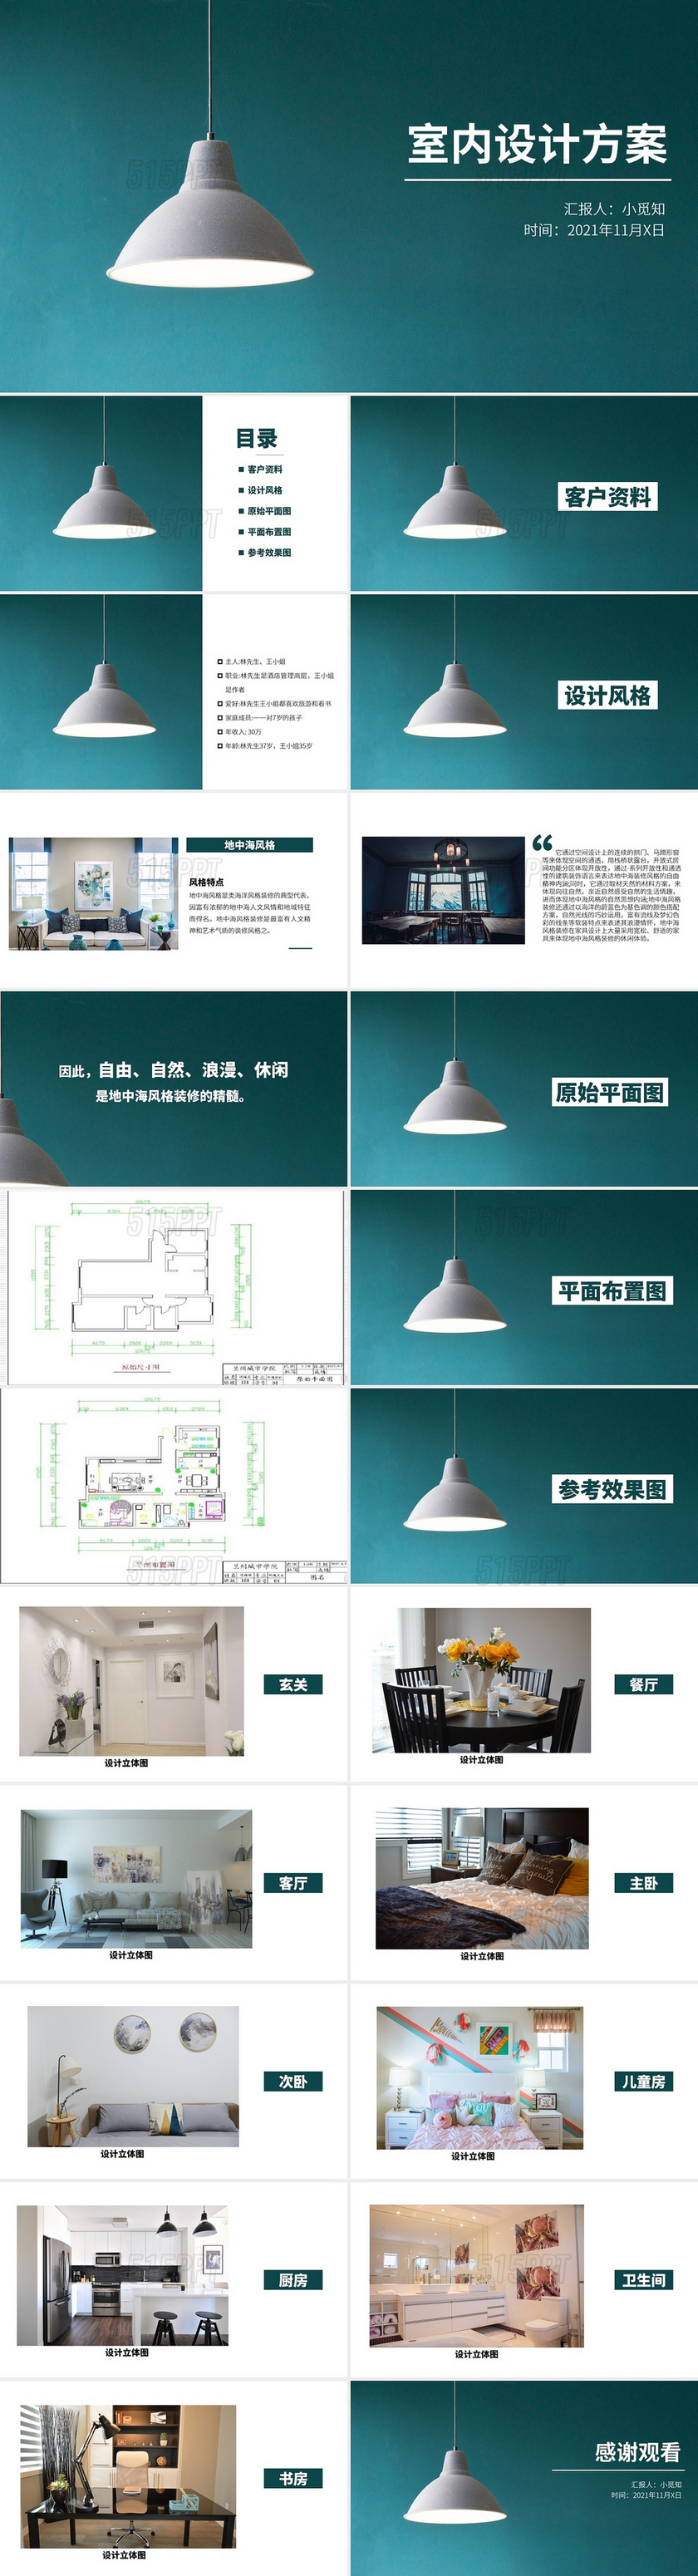 绿色简约室内设计方案工作汇报PPT模板室内设计方案 (4)